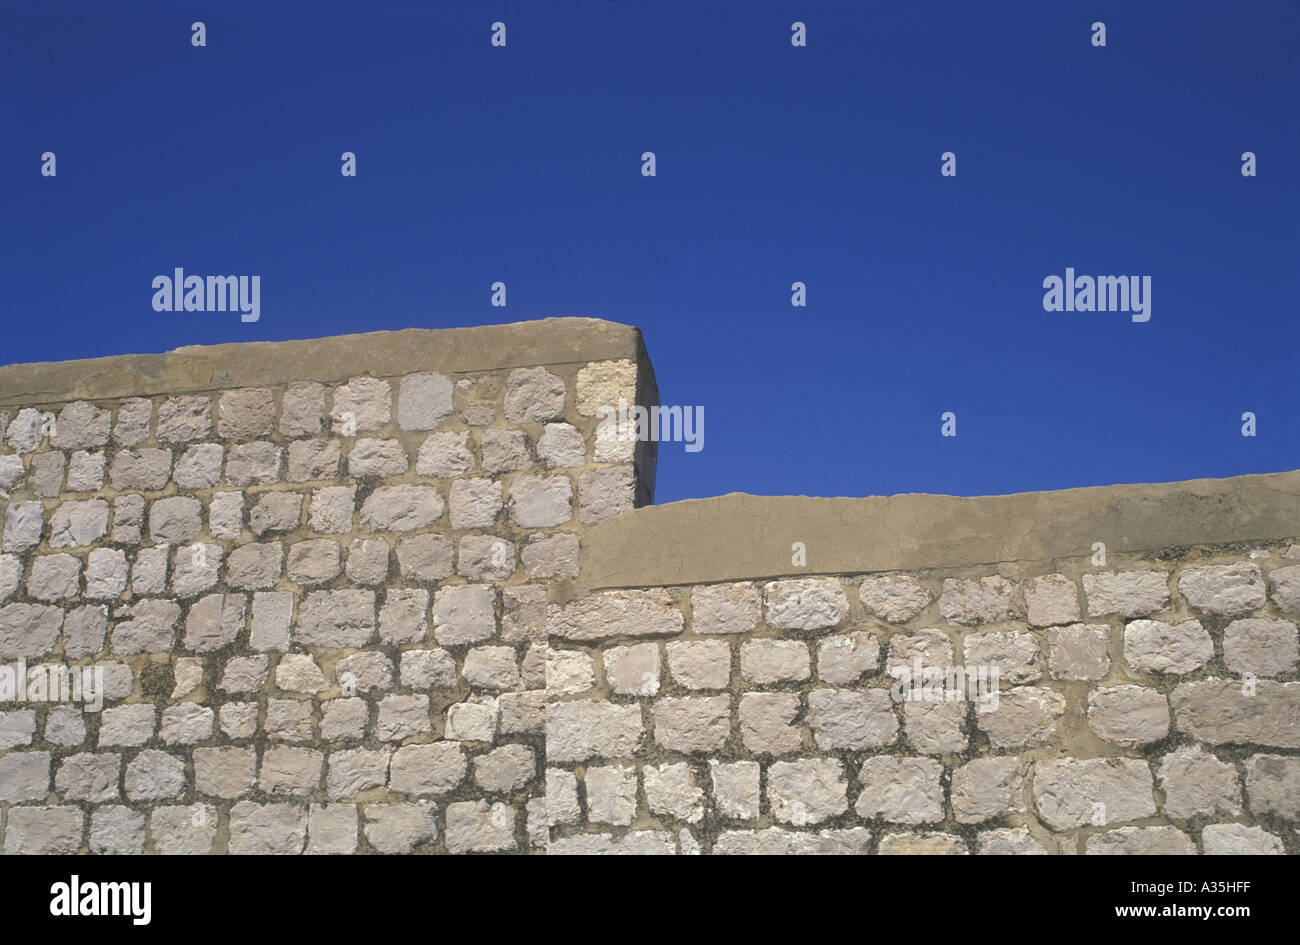 Treizième siècle Parapet de Pierre mur de la ville autour de la vieille ville de Dubrovnik Croatie Mer Adriatique Dalmatie du sud des Balkans Banque D'Images